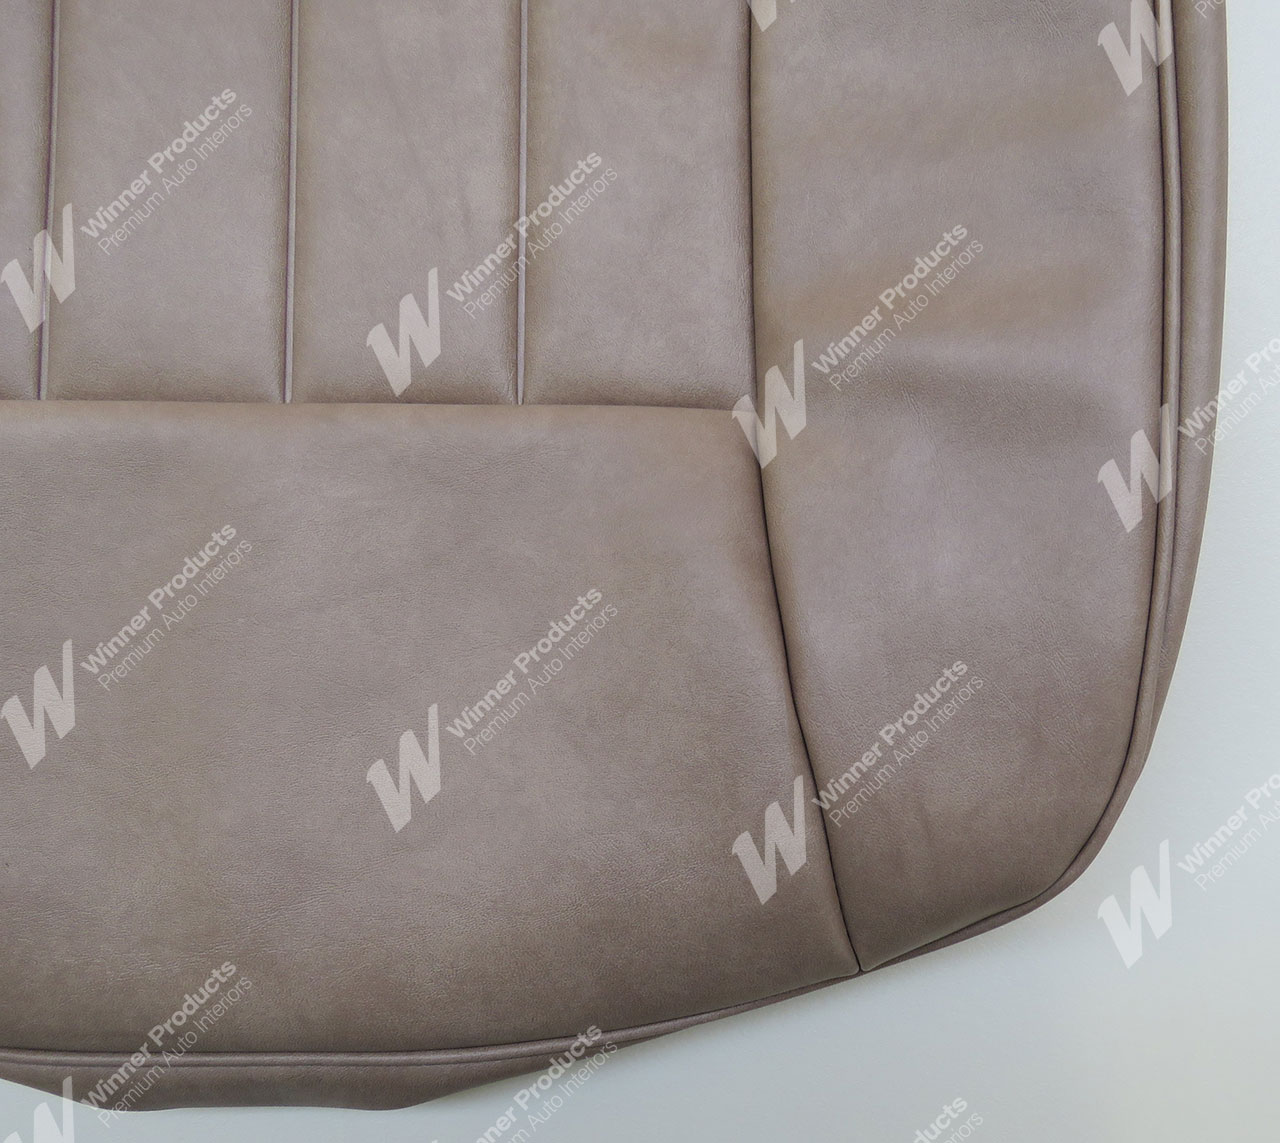 Holden Kingswood WB Kingswood Ute 64V Light Oyster Seat Covers (Image 5 of 5)